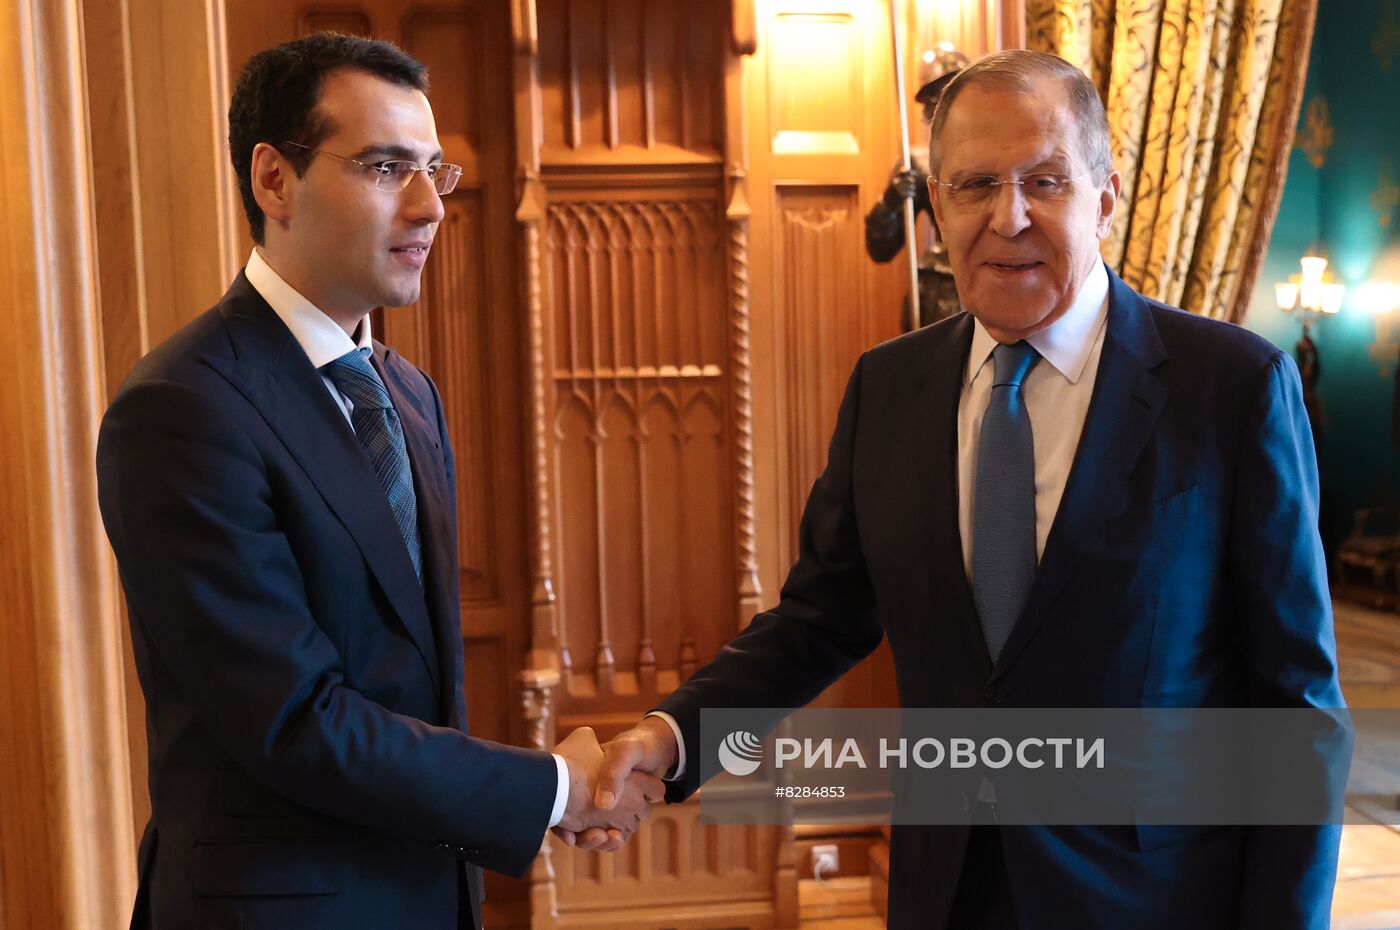 Встреча министров иностранных дел РФ и Абхазии С. Лаврова и И. Ардзинбы